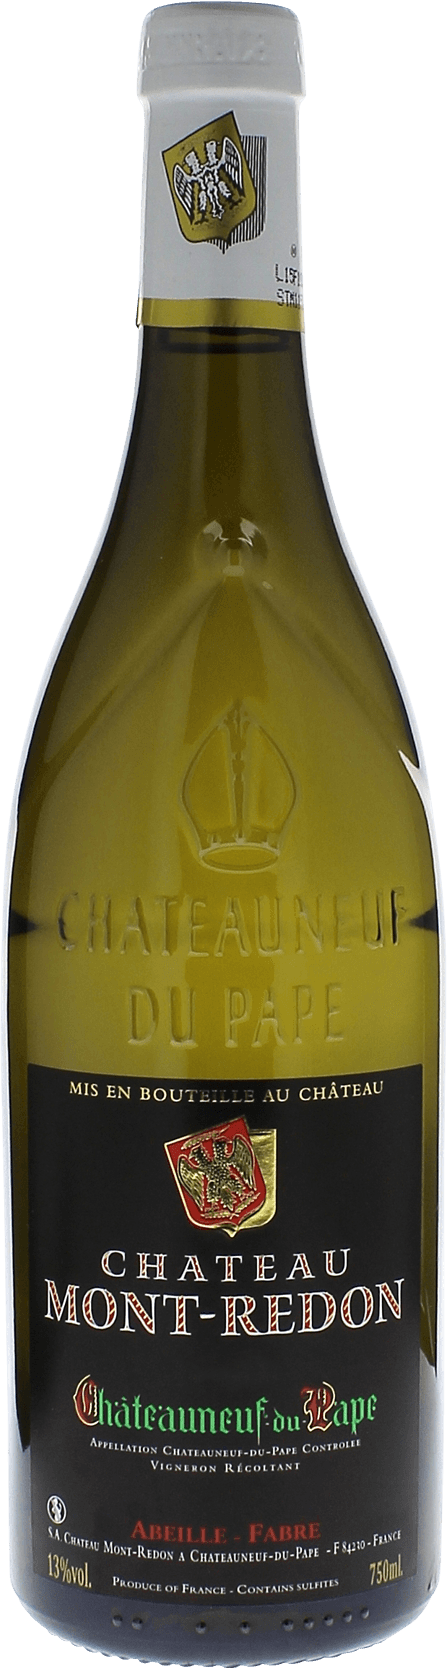 Chateauneuf-du-pape blanc mont-redon 2017  Chteauneuf-du-Pape, Valle du Rhne Blanc